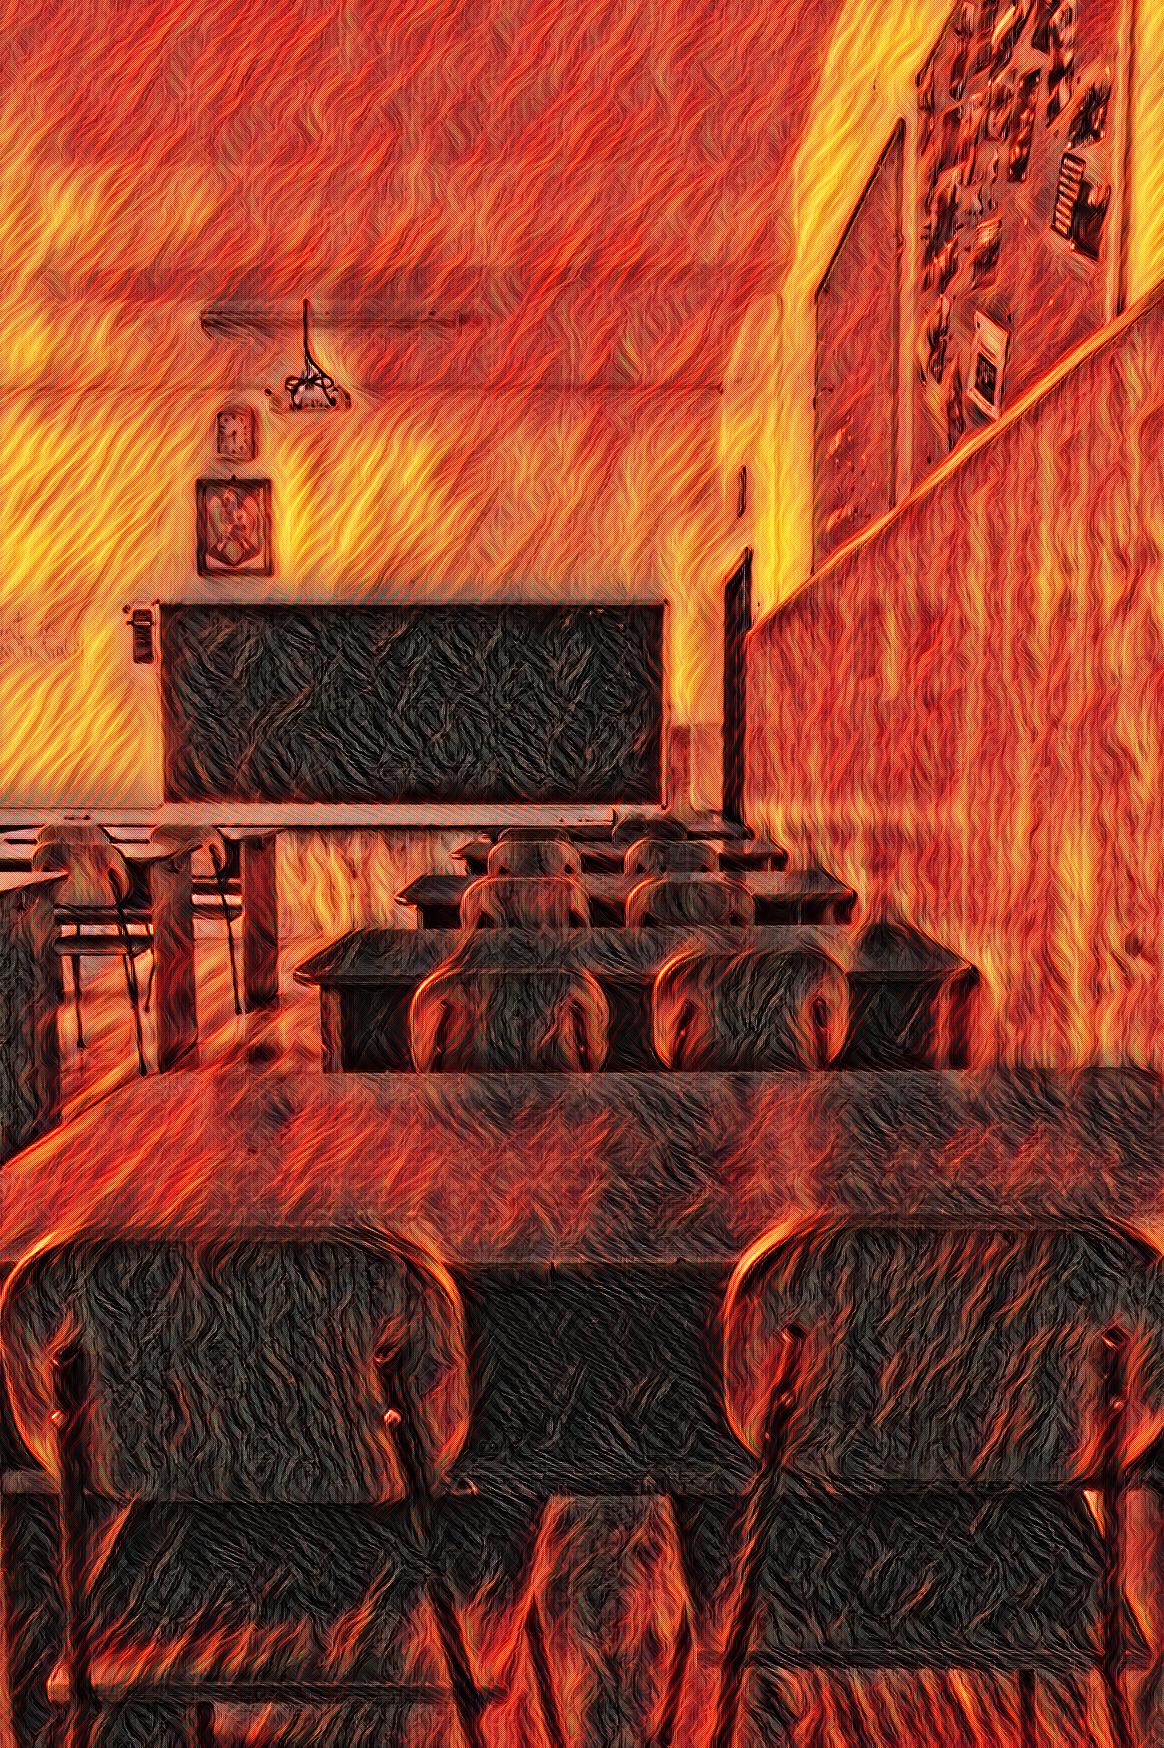 Dibujo de un salón de clases mientras se incendia. | Foto: Pexels